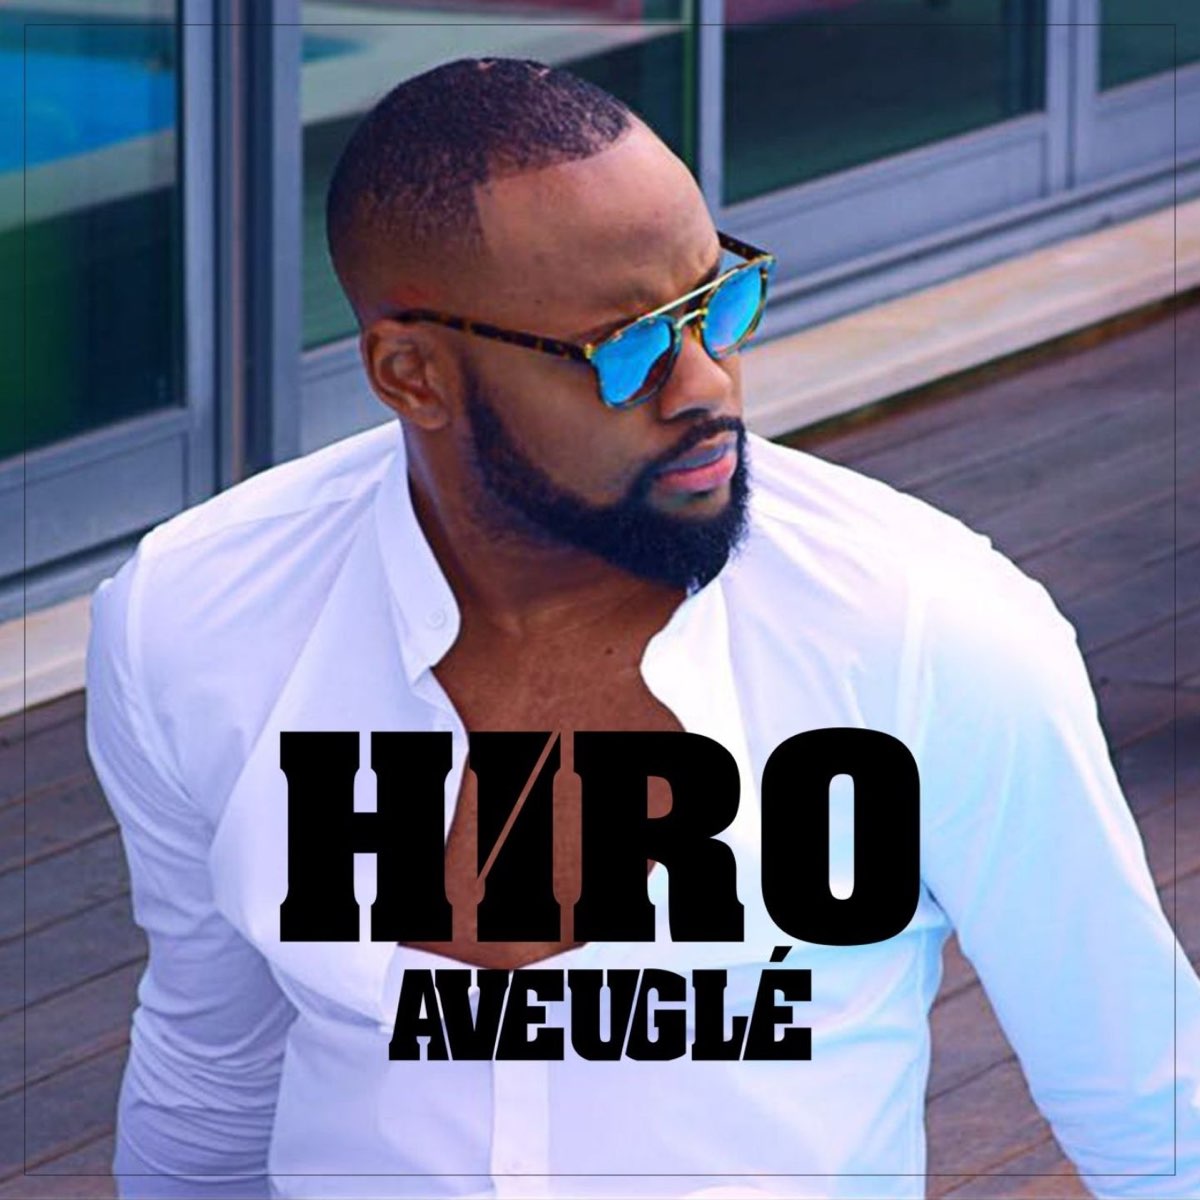 ‎Aveuglé - Single by Hiro on Apple Music